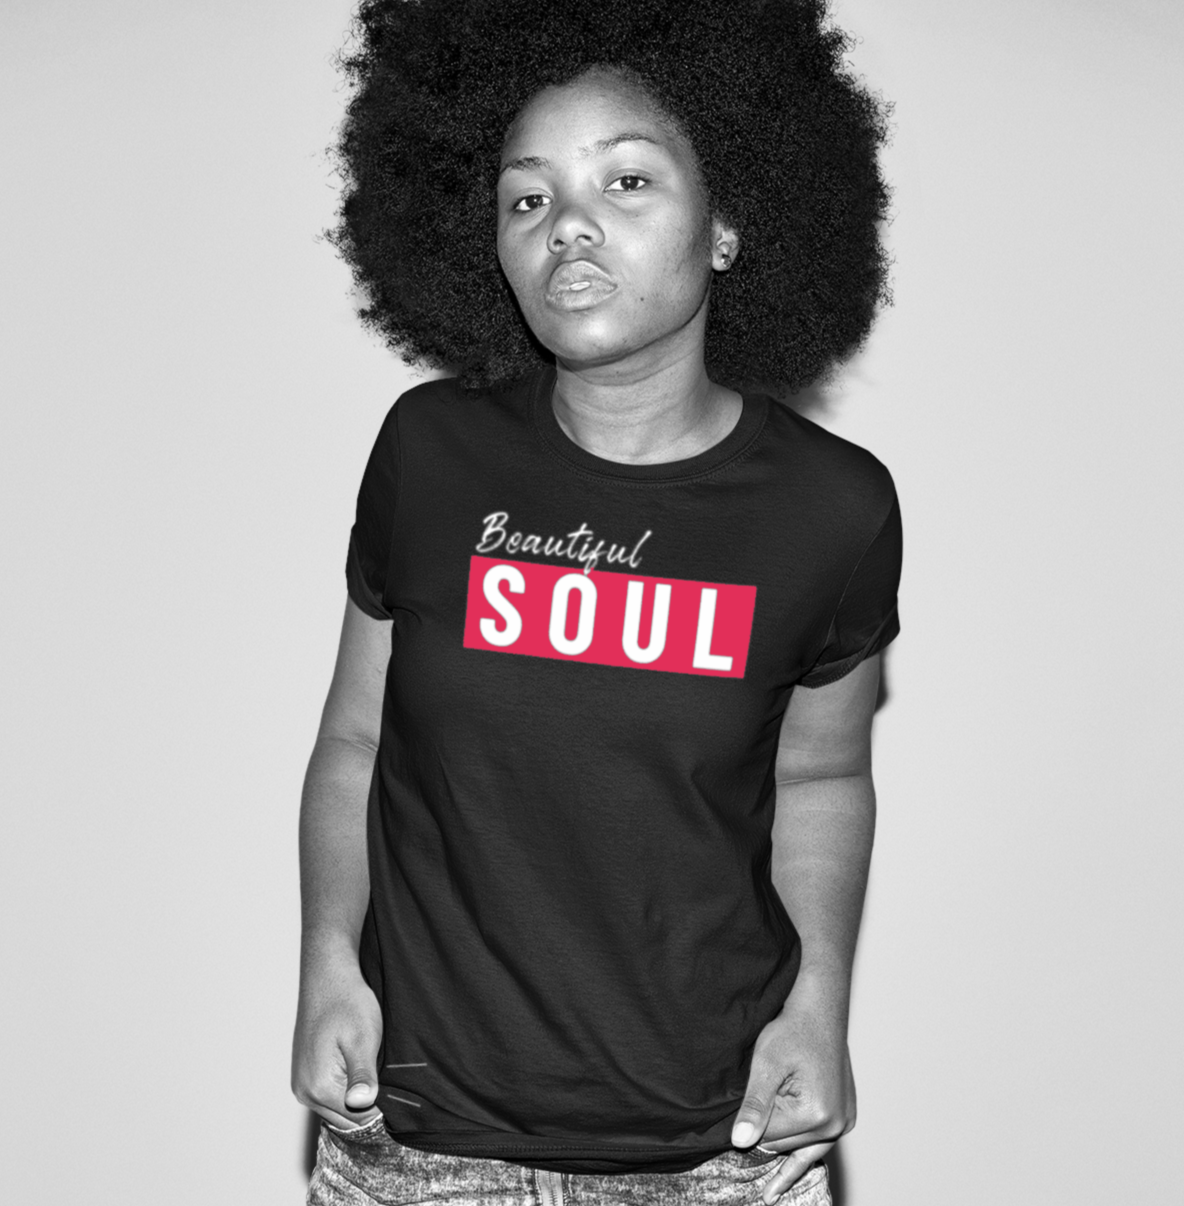 Beautiful Soul Adult T-shirt